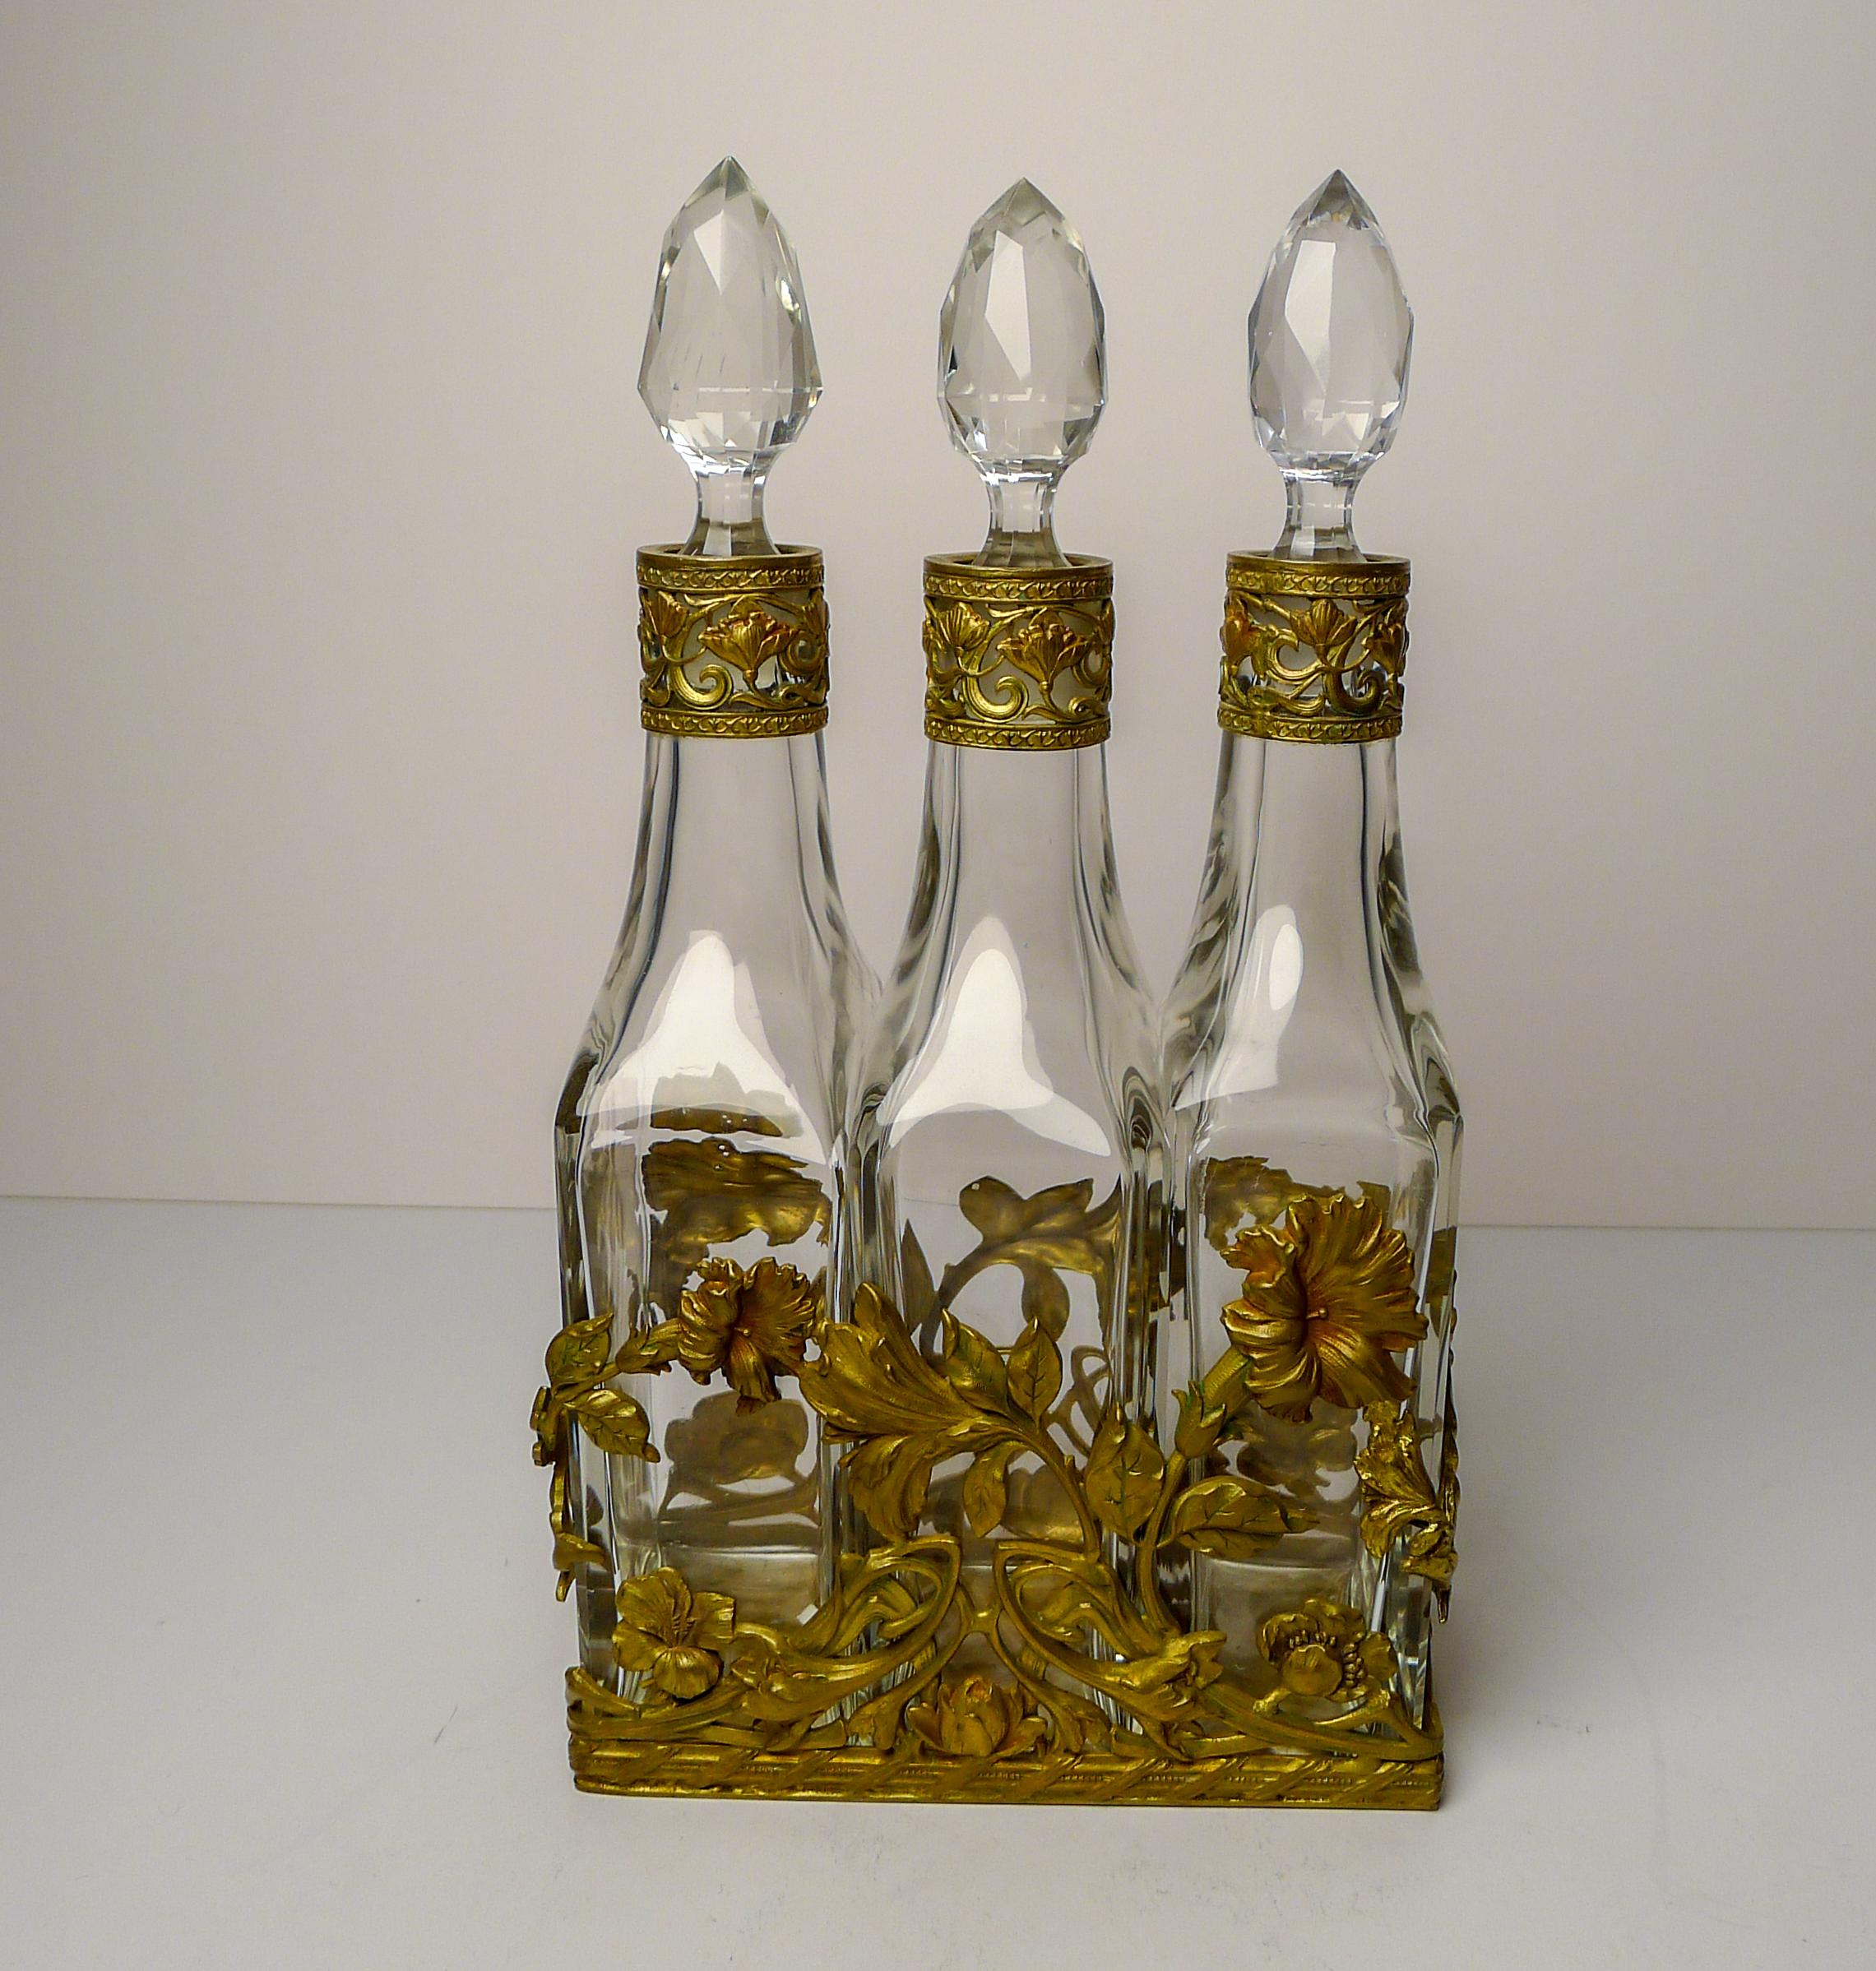 French Art Nouveau Liquor Decanter Set / Perfume Caddy c.1900 For Sale 7